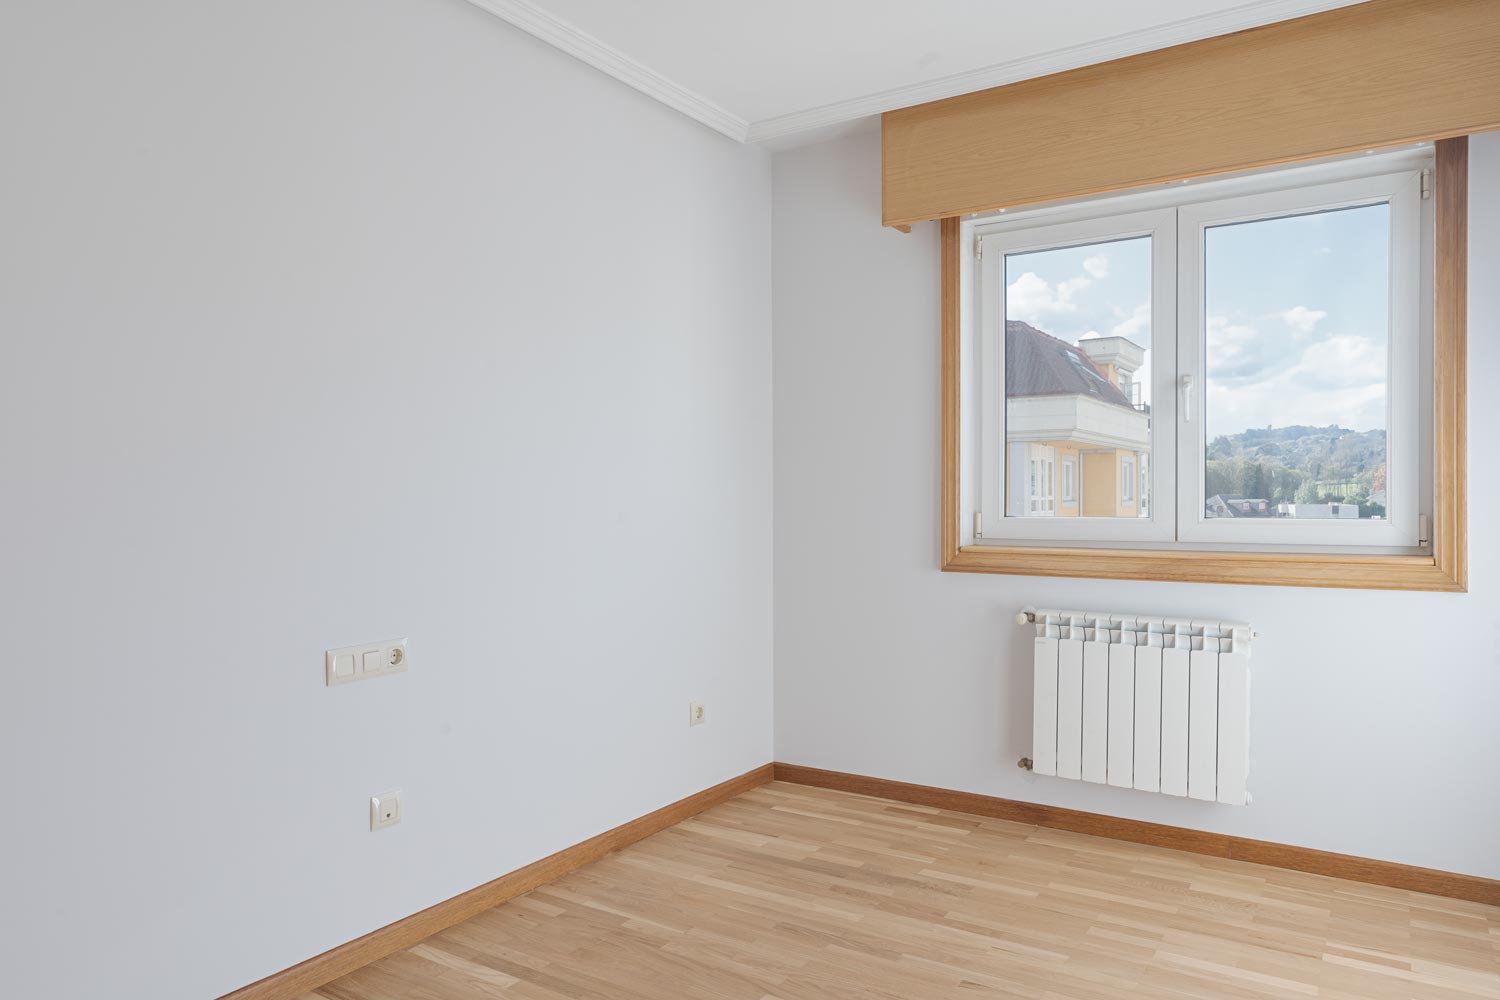 Una habitación vacía con suelo de parqué claro, una ventana de madera que muestra vistas exteriores y un radiador blanco, con paredes en tono gris claro